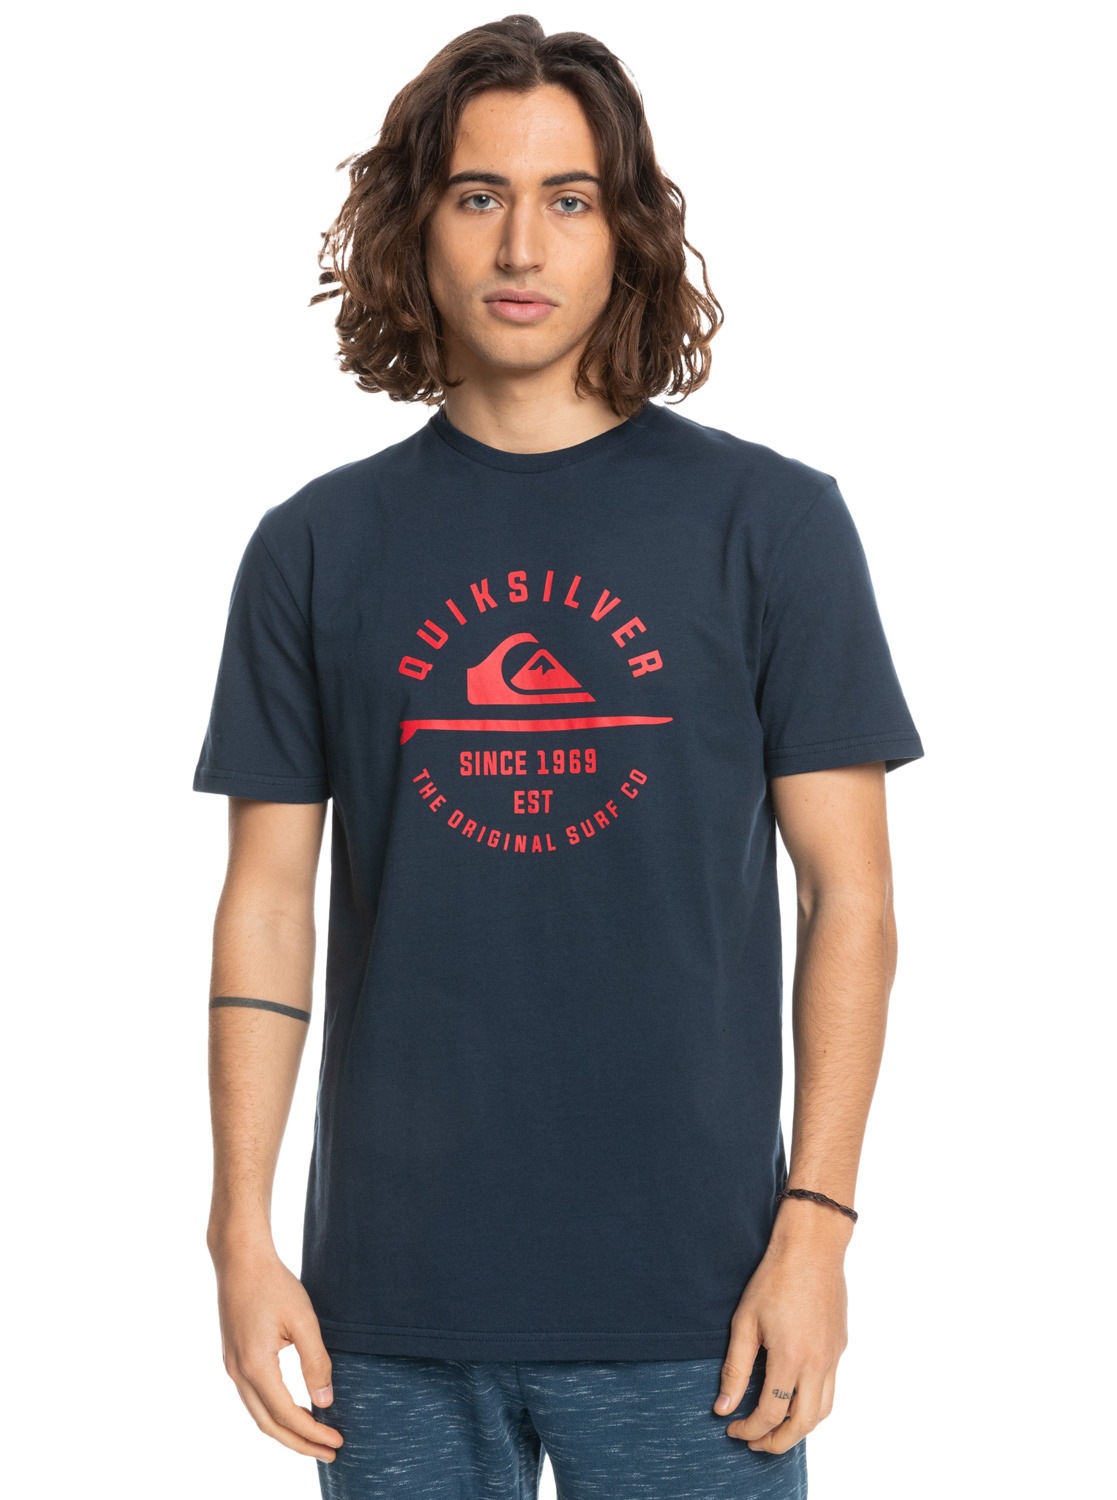 Quiksilver T-Shirt »Mw Surf Lockup« von Quiksilver